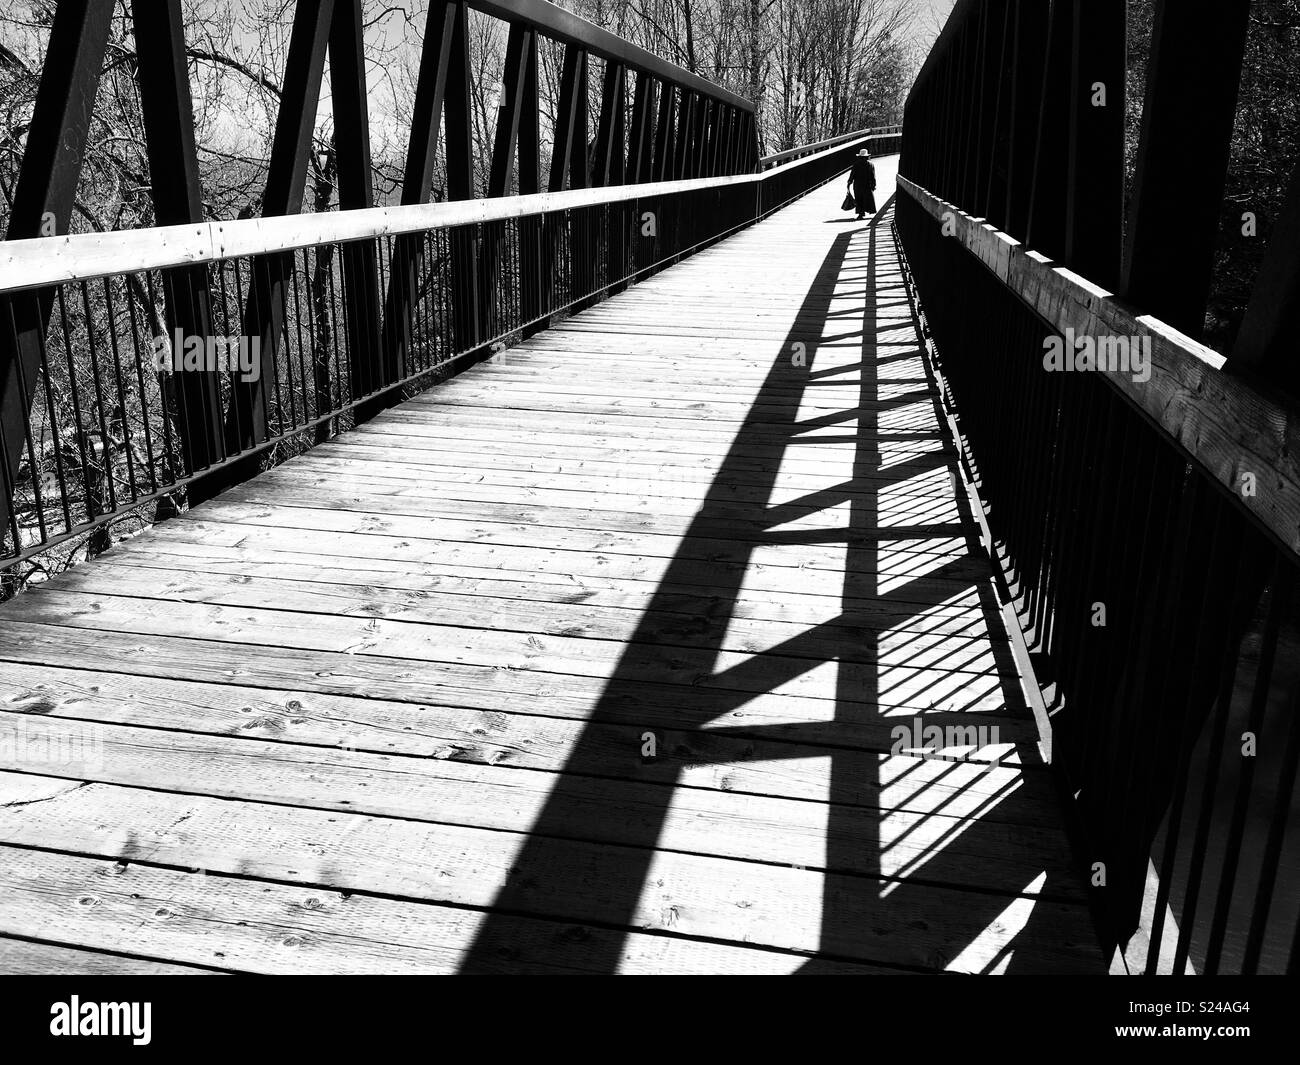 Persona solitaria caminando sobre un puente de madera. Blanco y negro. Foto de stock